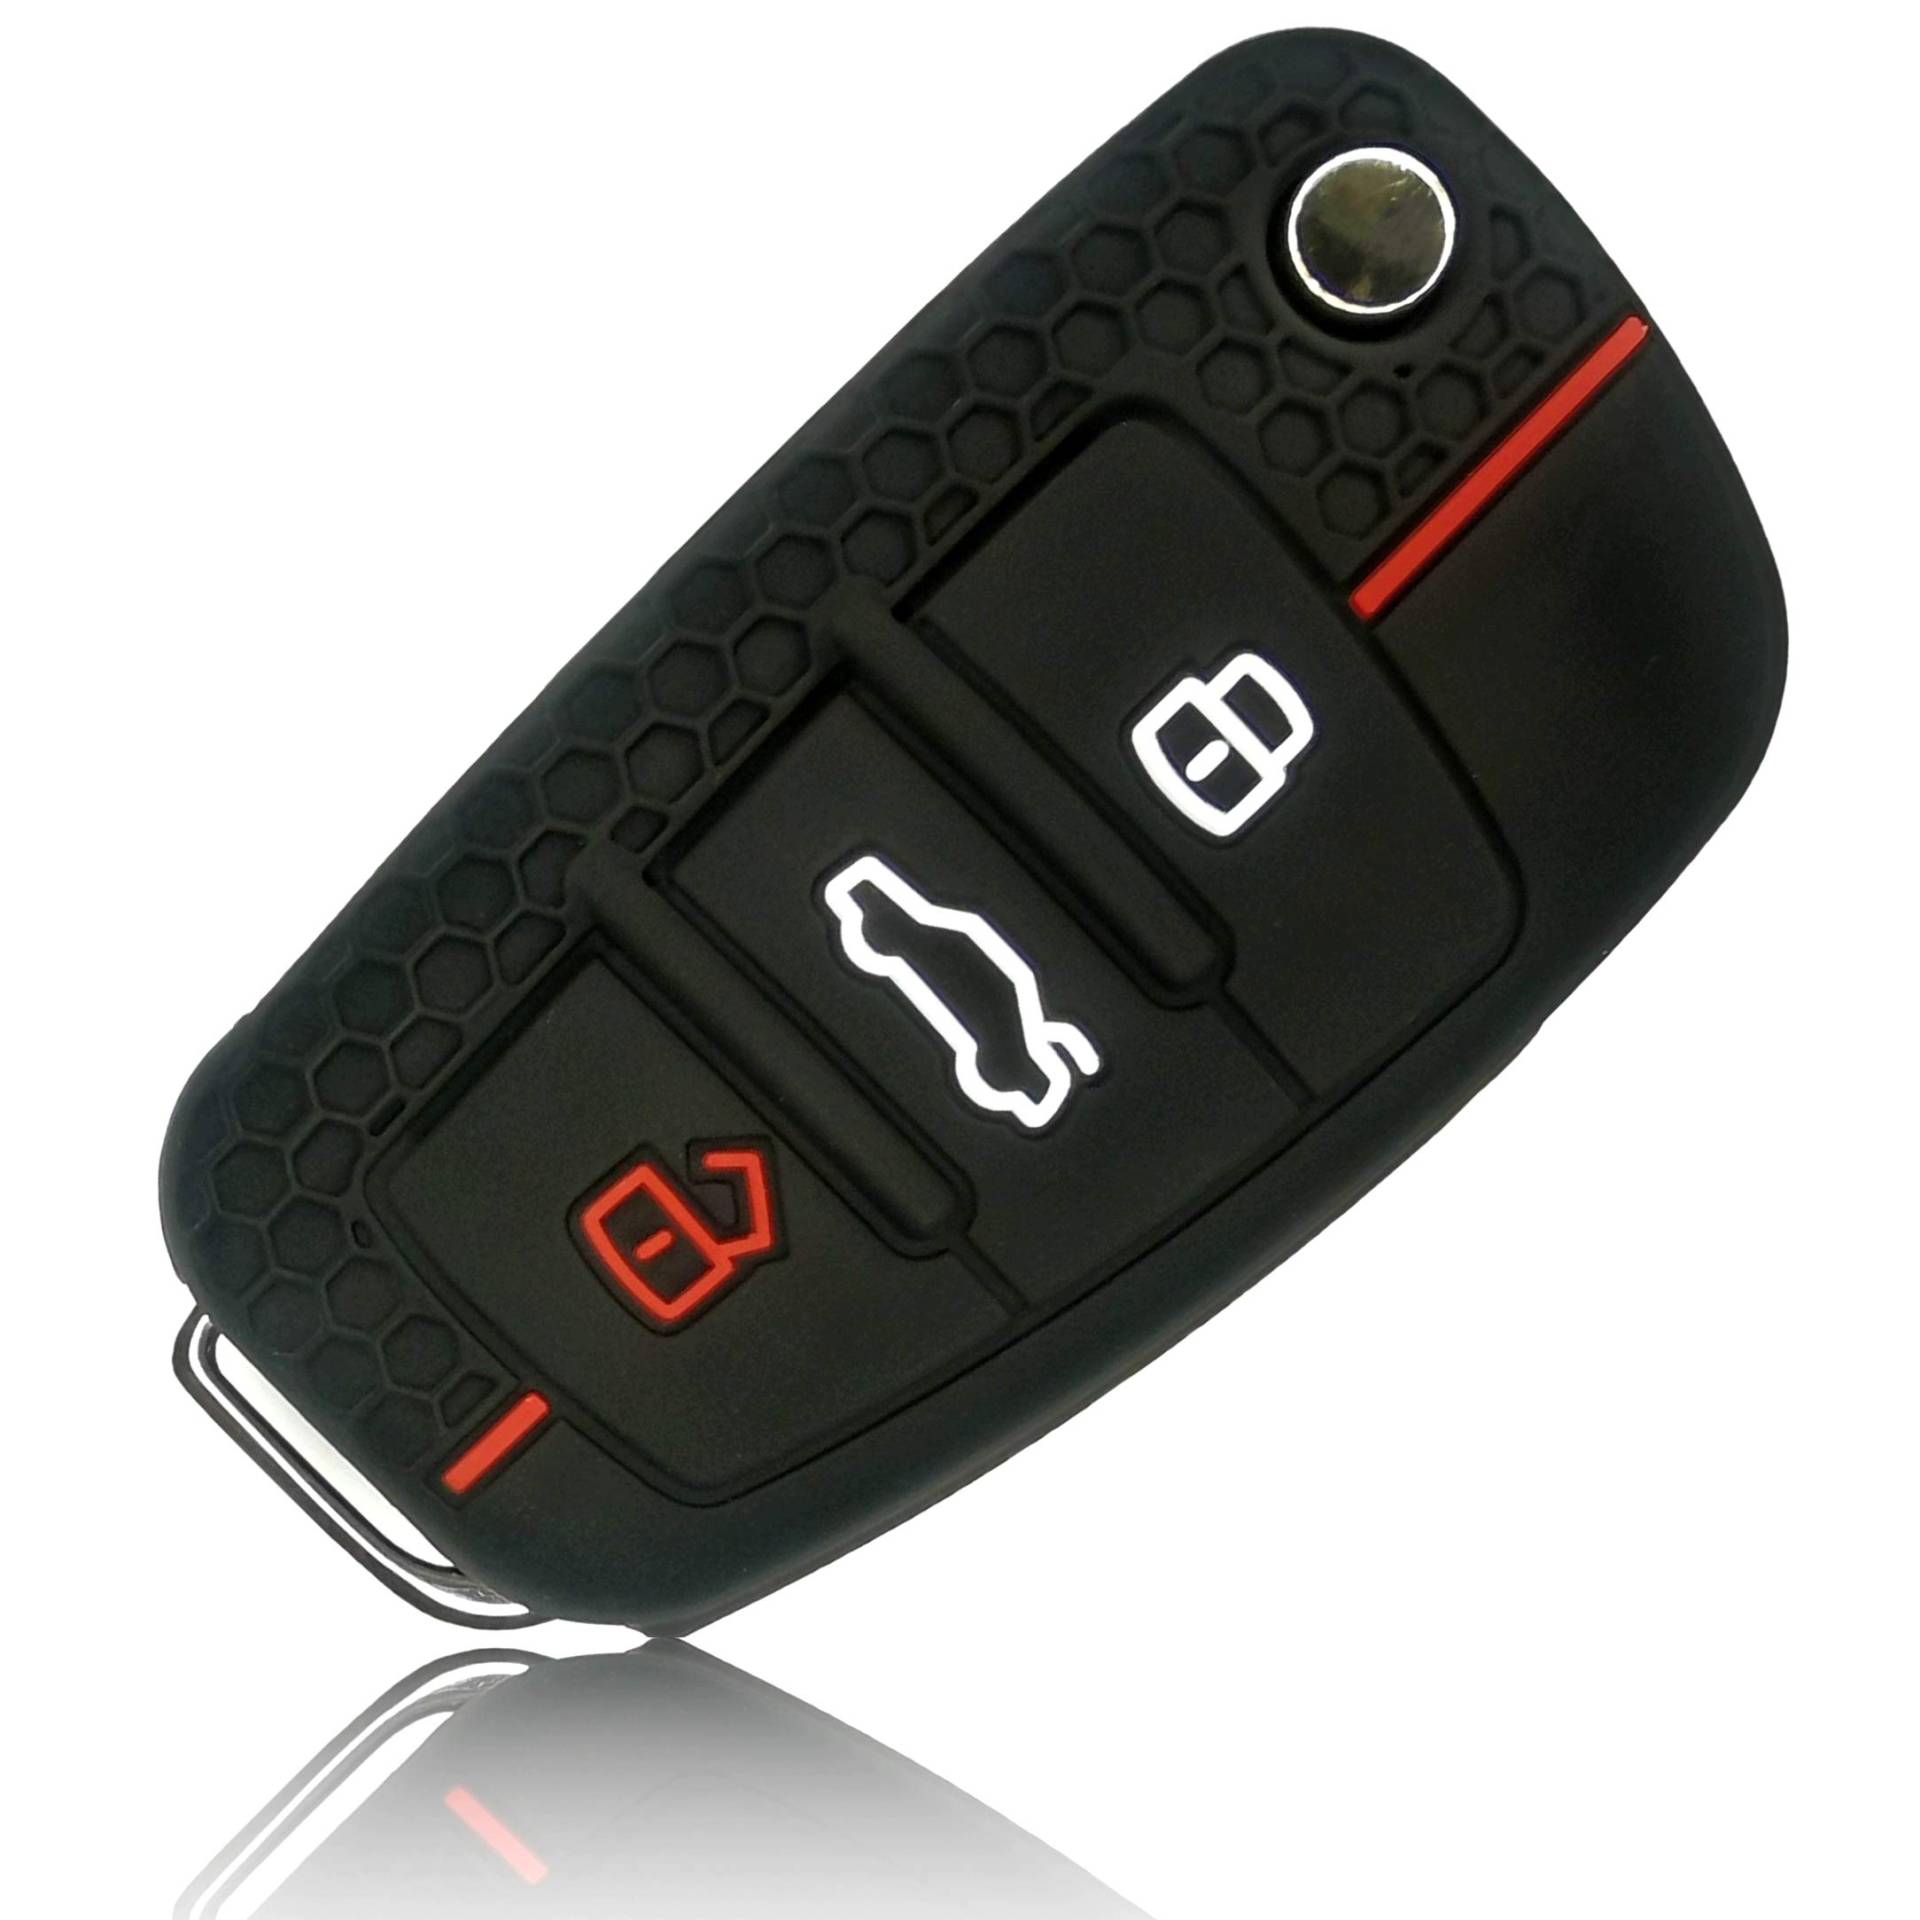 FOAMO Autoschlüssel Hülle kompatibel mit Audi 3-Tasten Klappschlüssel - Silikon Schutzhülle Cover Schlüssel-Hülle in Schwarz Rot von FOAMO